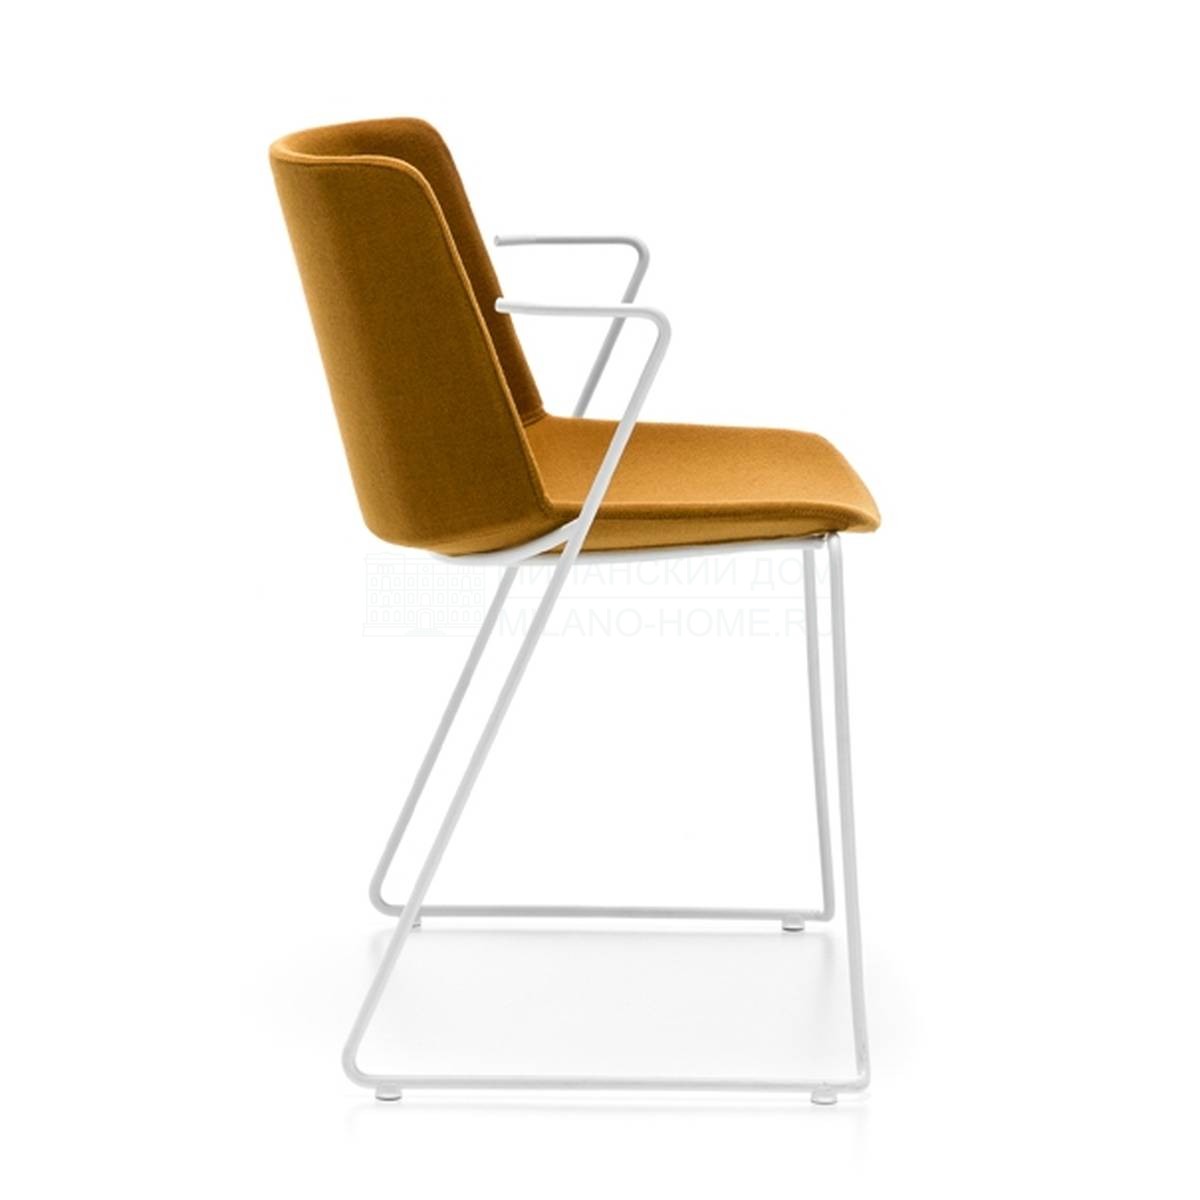 Полукресло Aiku soft chair из Италии фабрики MDF ITALIA